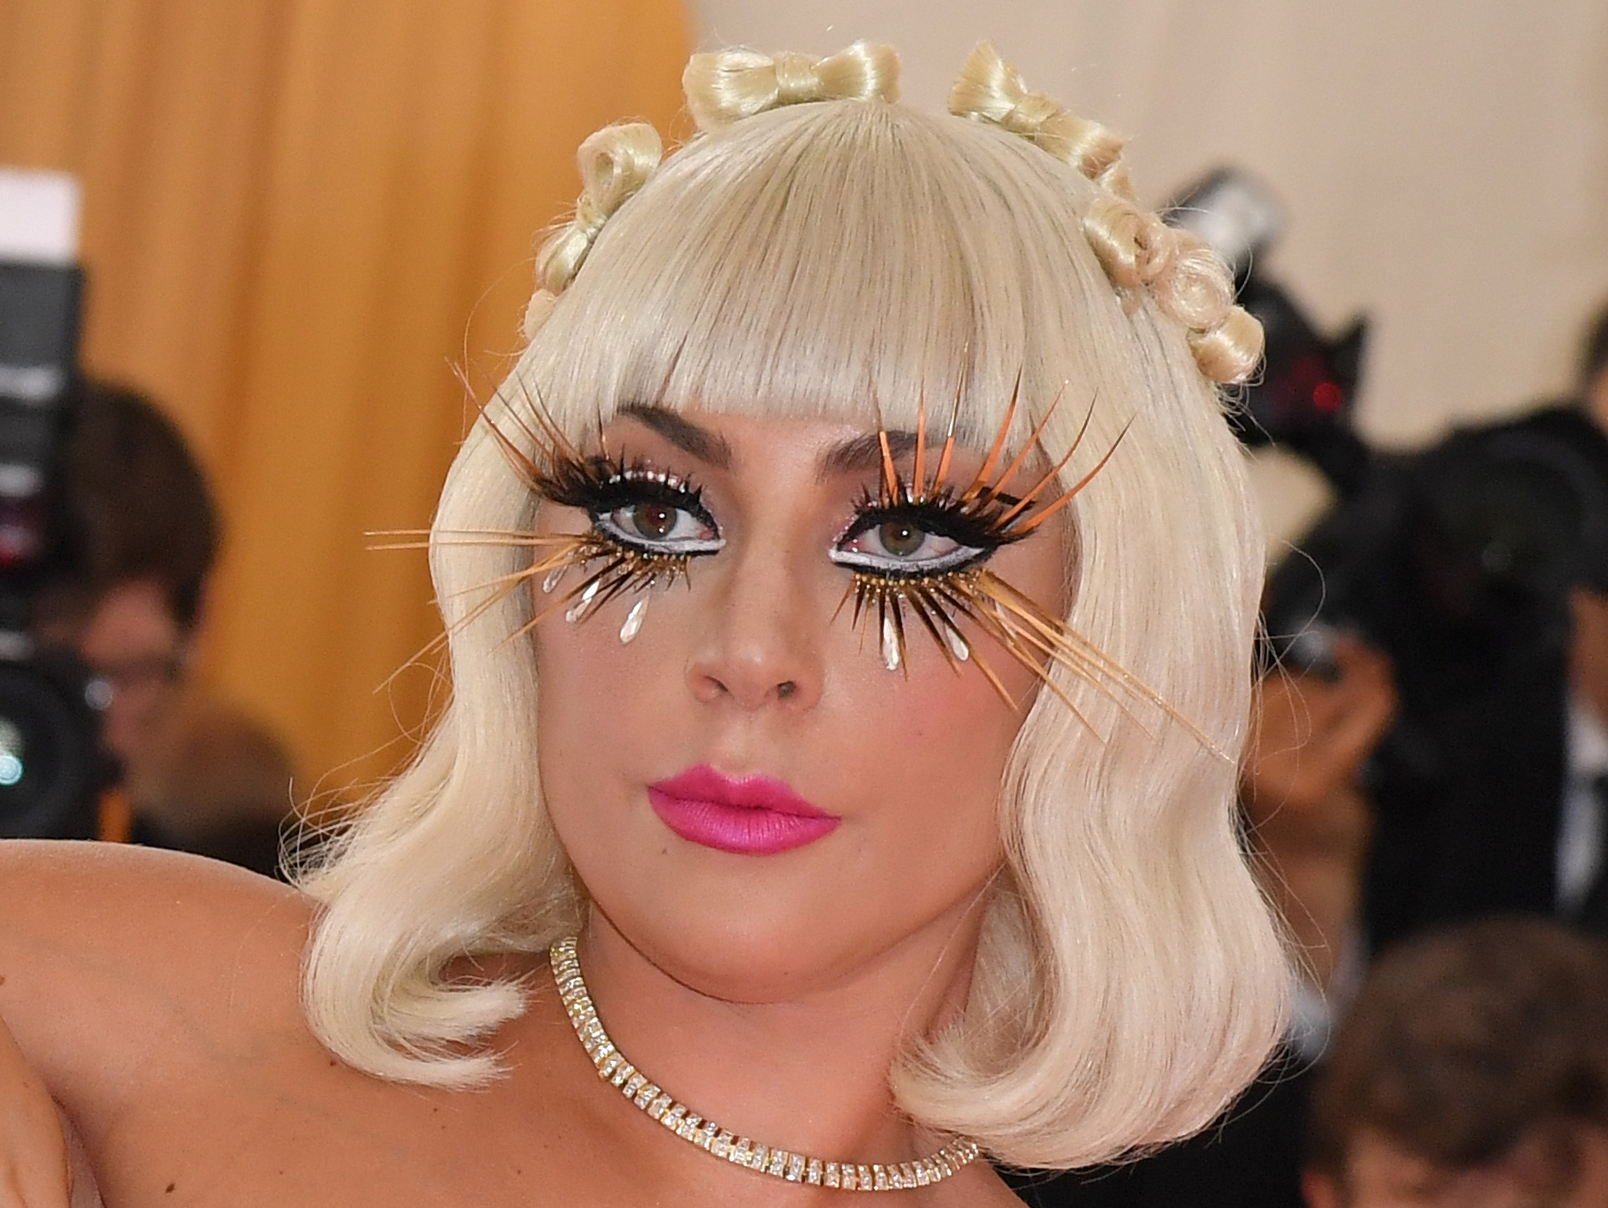 Además de sus extravagantes atuendos, Lady Gaga también lució unos accesorios impactantes en las pestañas. (Foto Prensa Libre: AFP)